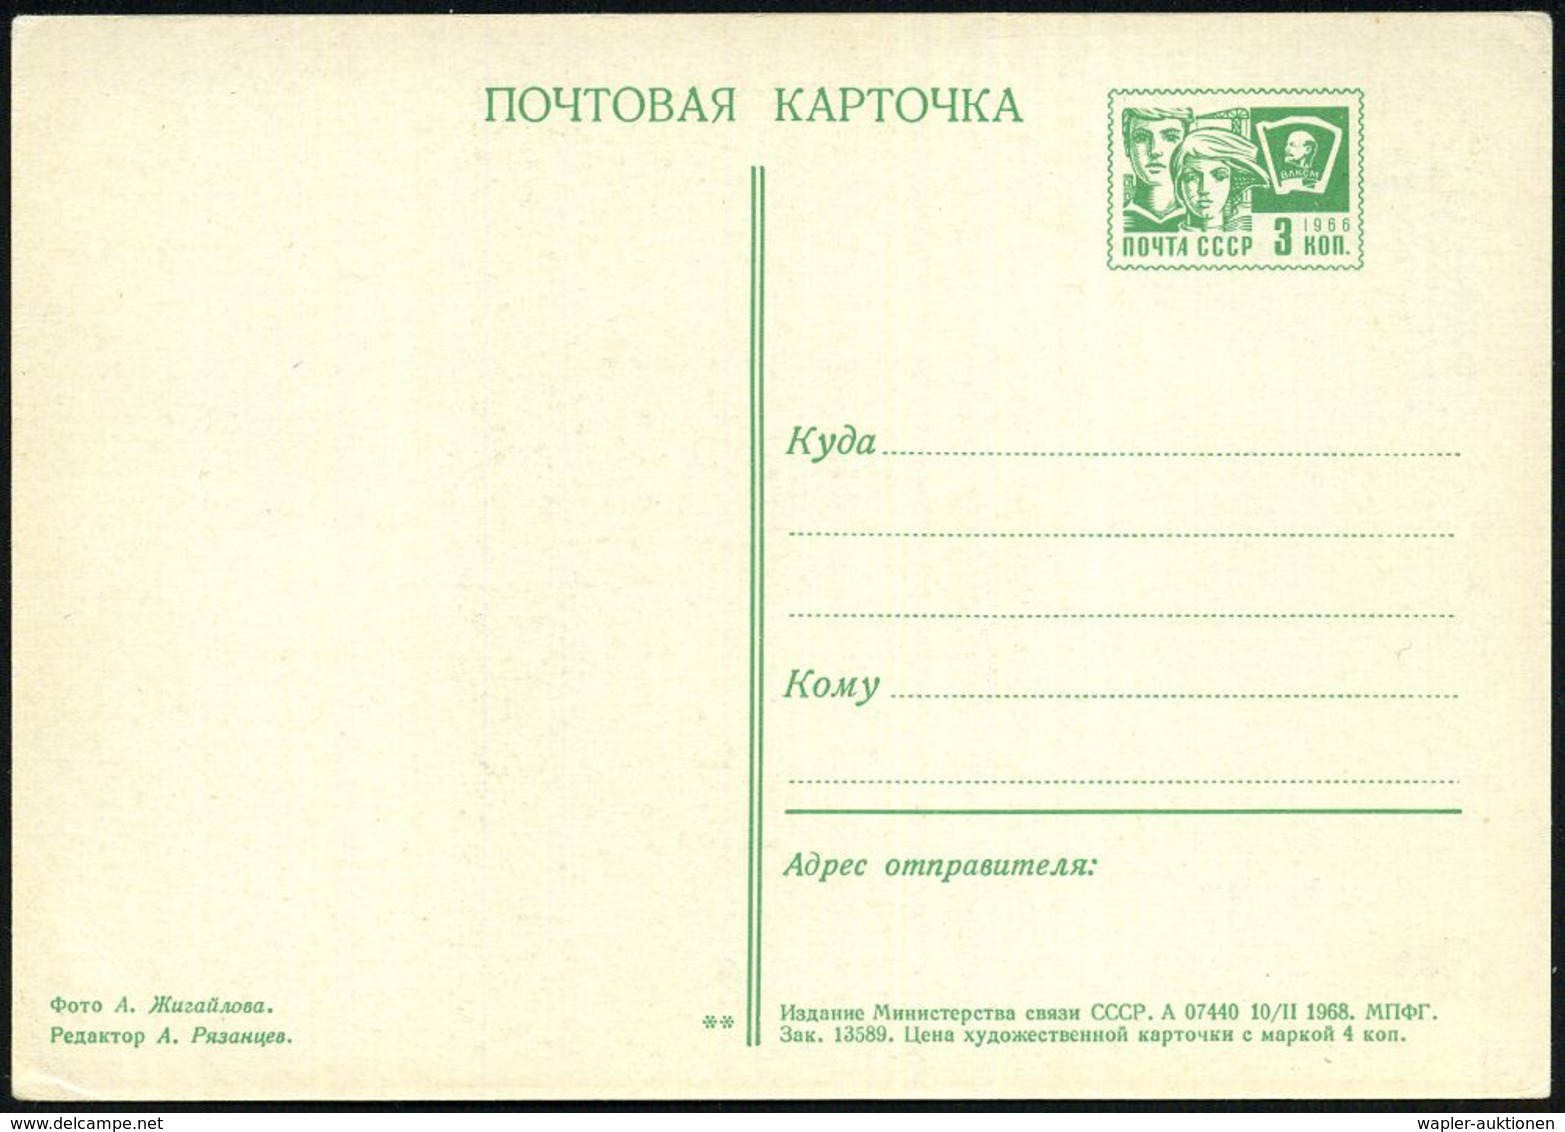 ASTRONOMIE / OBSERVATORIEN / PLANETARIEN : UdSSR 1968 3 Kop. BiP Komsomolzen , Grün: Radioteleskop "Orbita" In Novosibir - Astronomie